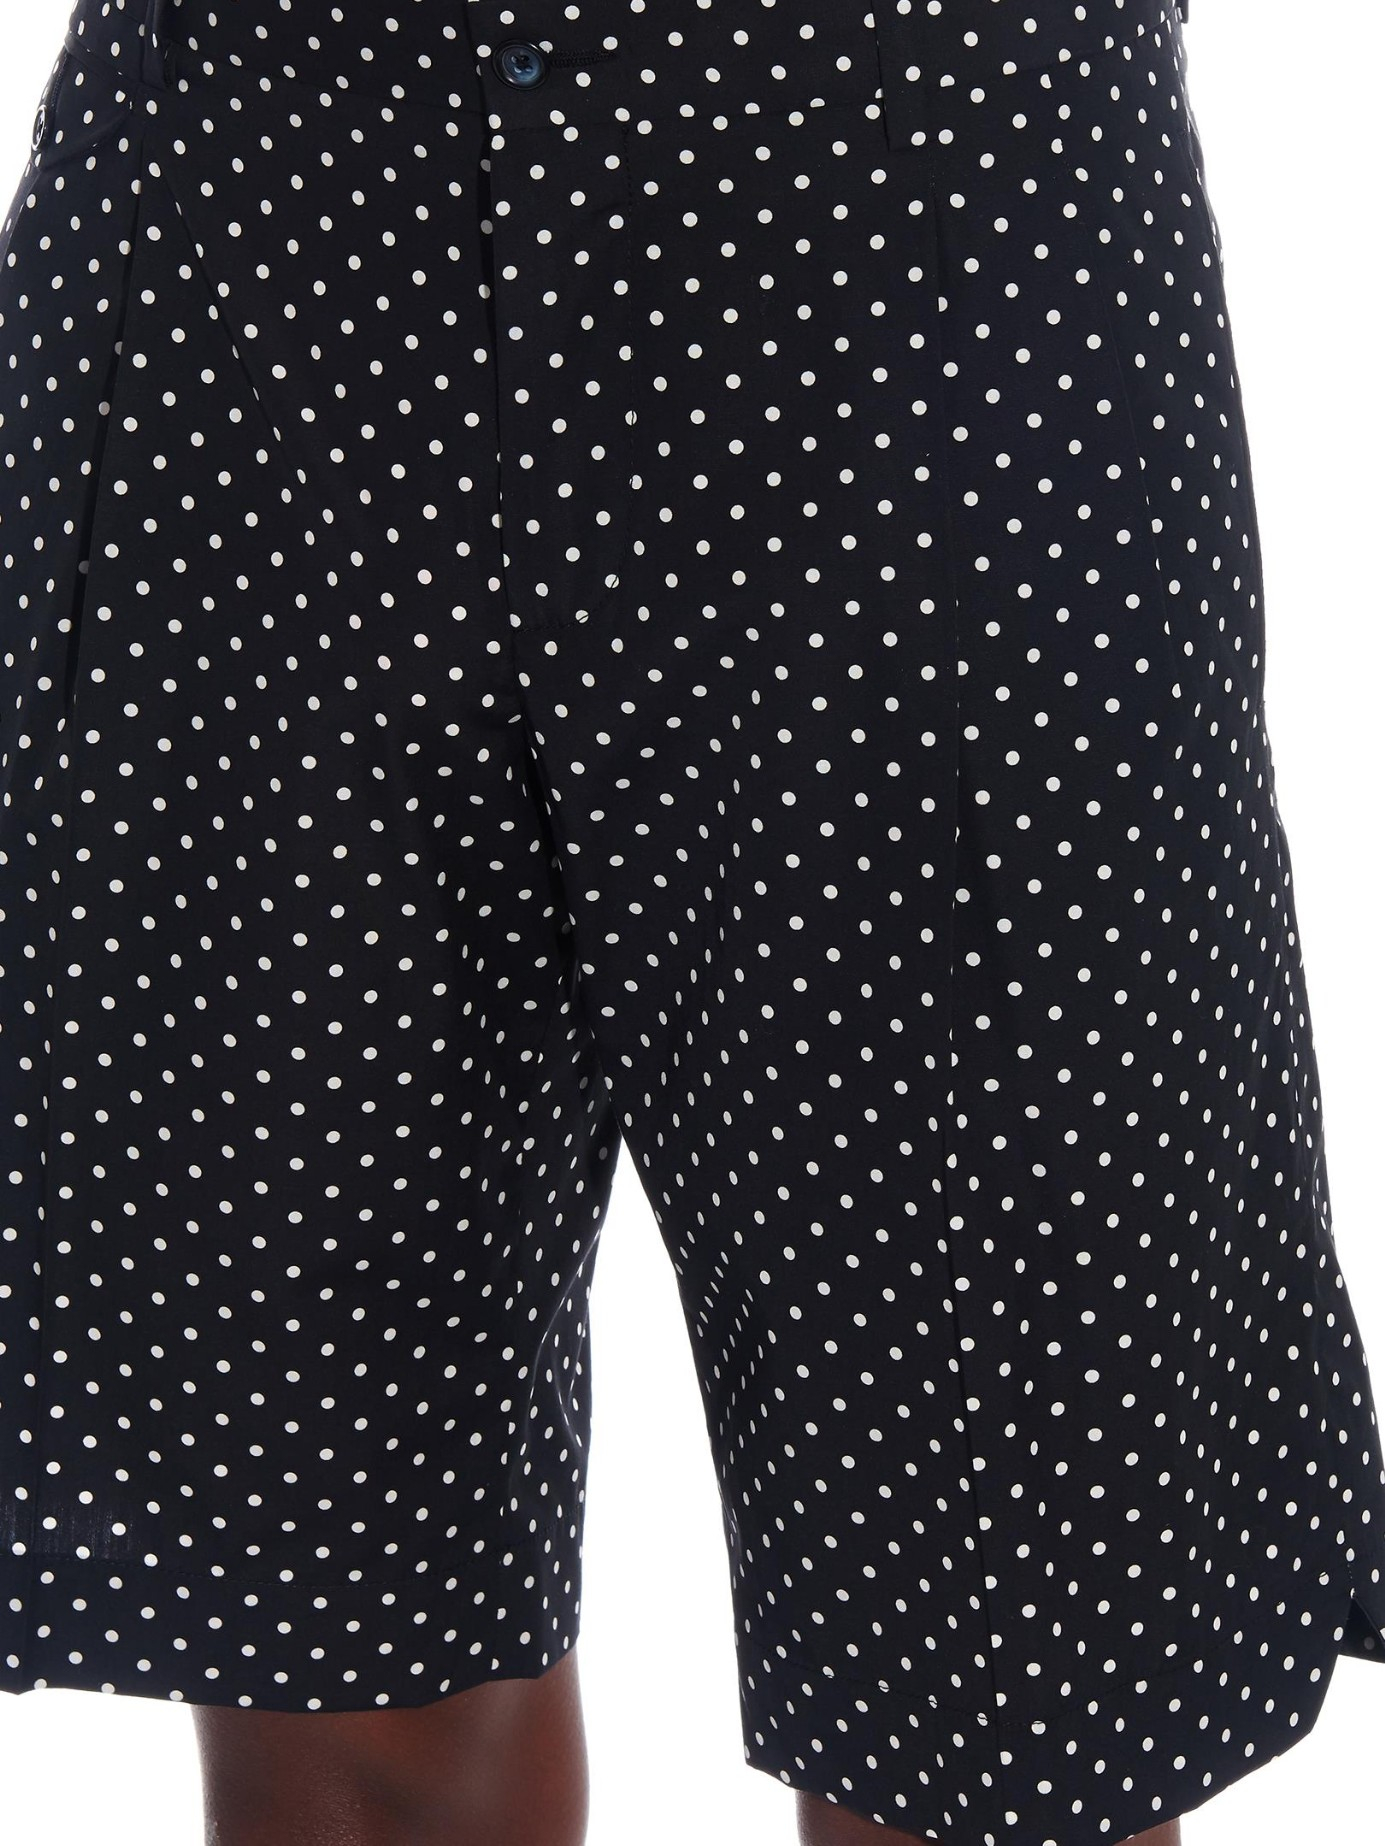 Lyst - Dolce & Gabbana Polka-dot Print Bermuda Shorts in Black for Men